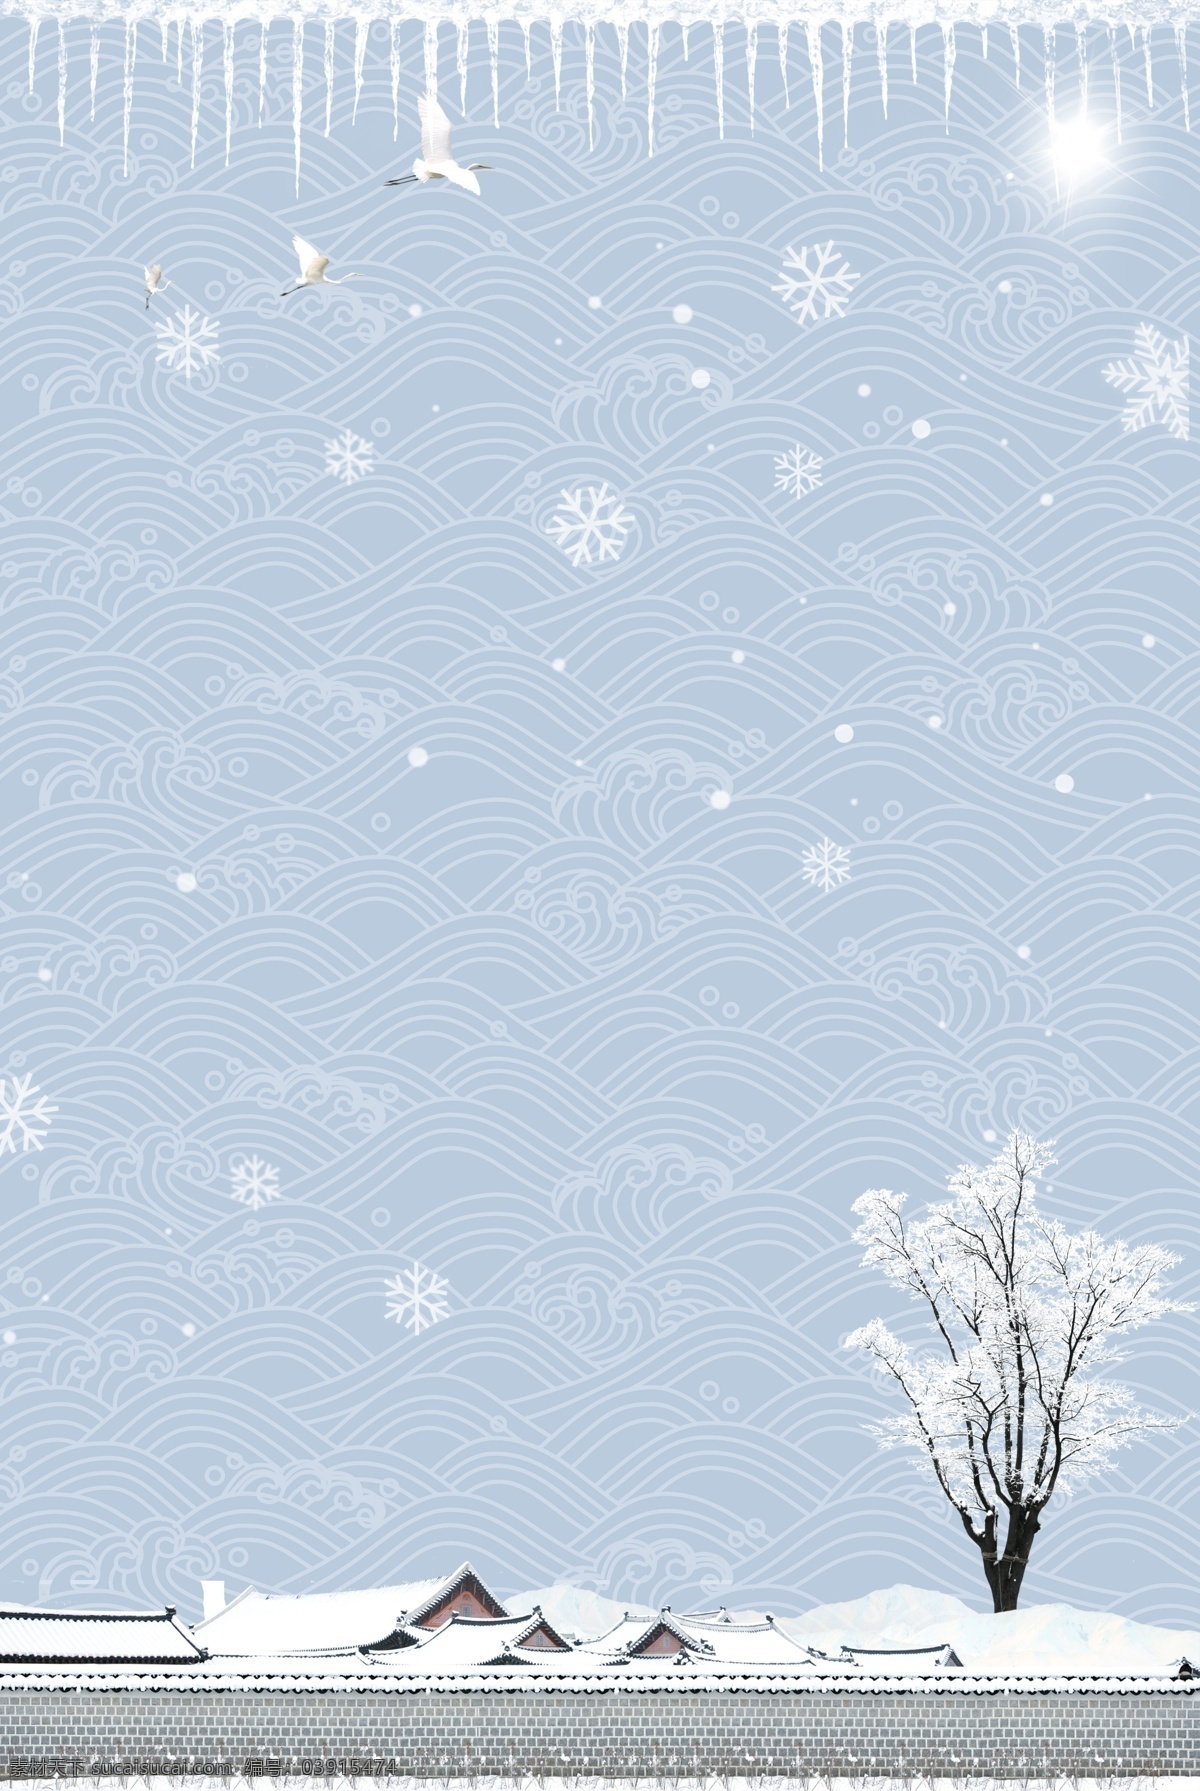 二十四节气 大寒 中国 风 建筑 雪景 海报 传统节气 24节气 节气 冬季 中国风建筑 雪花